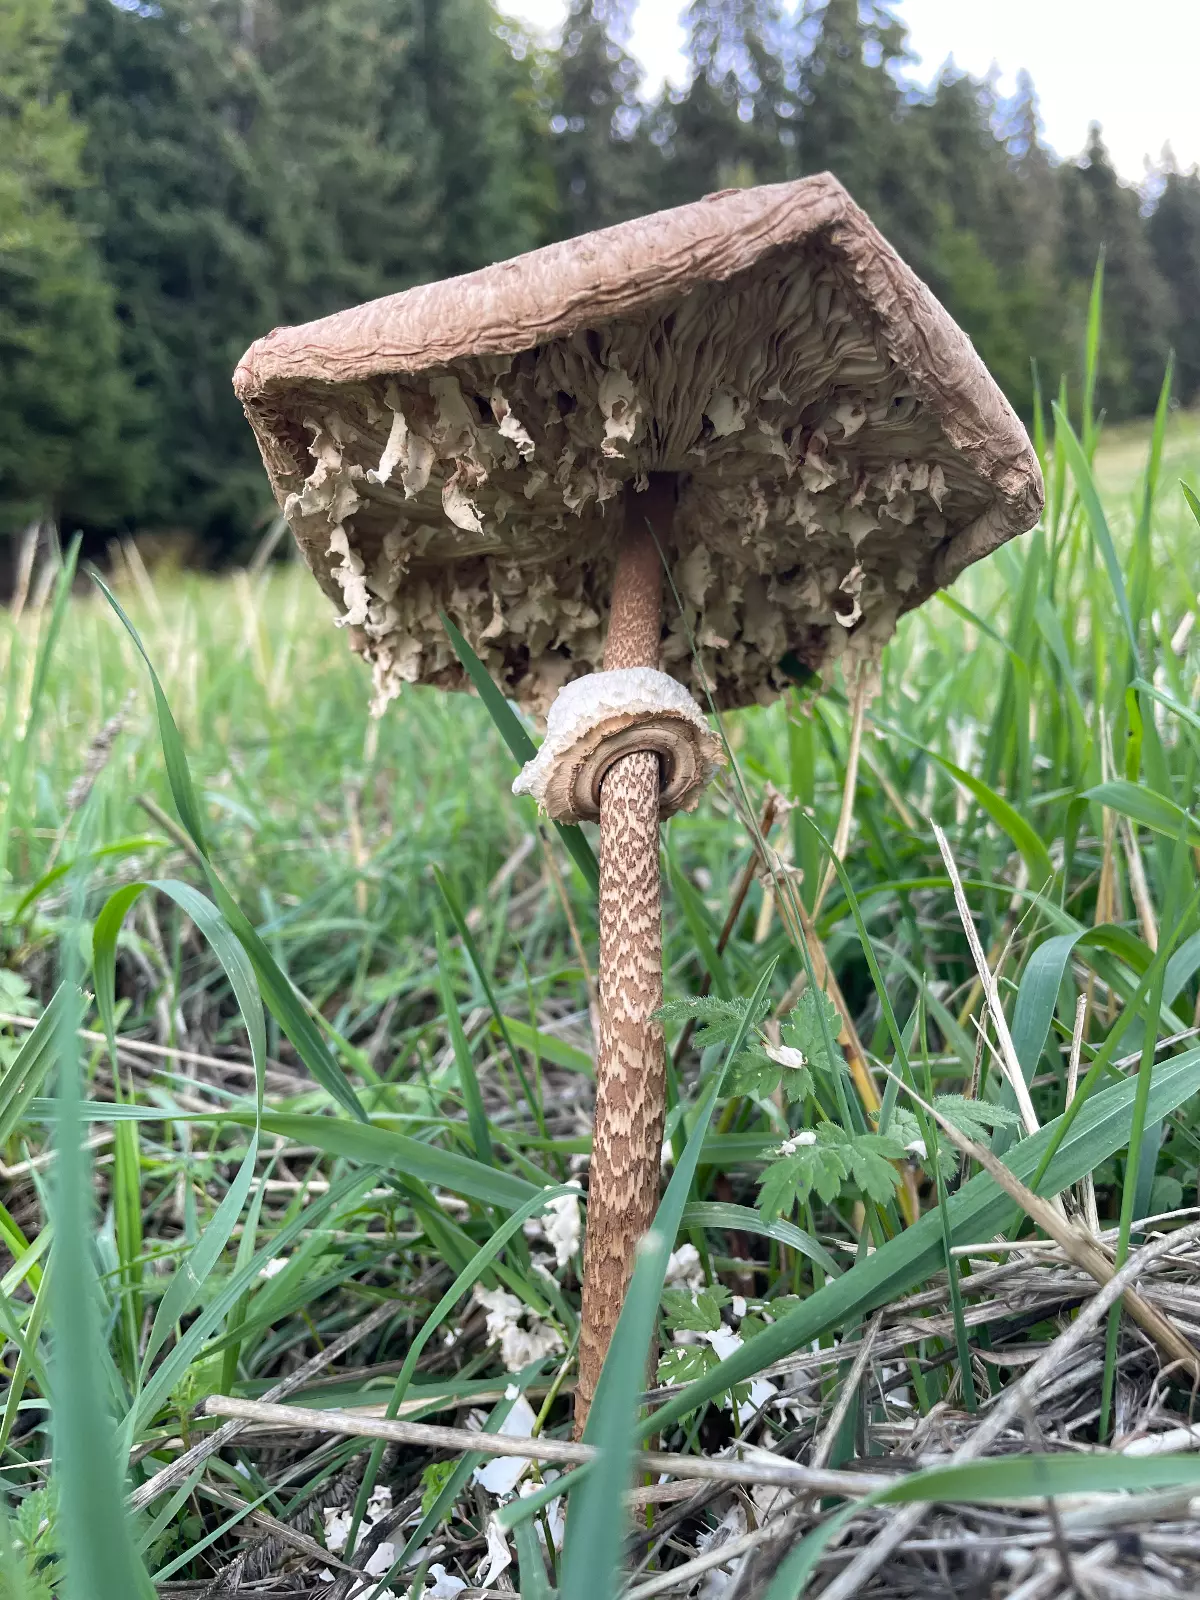 vue en perspective par dessous de vieux champignon qui s effrite